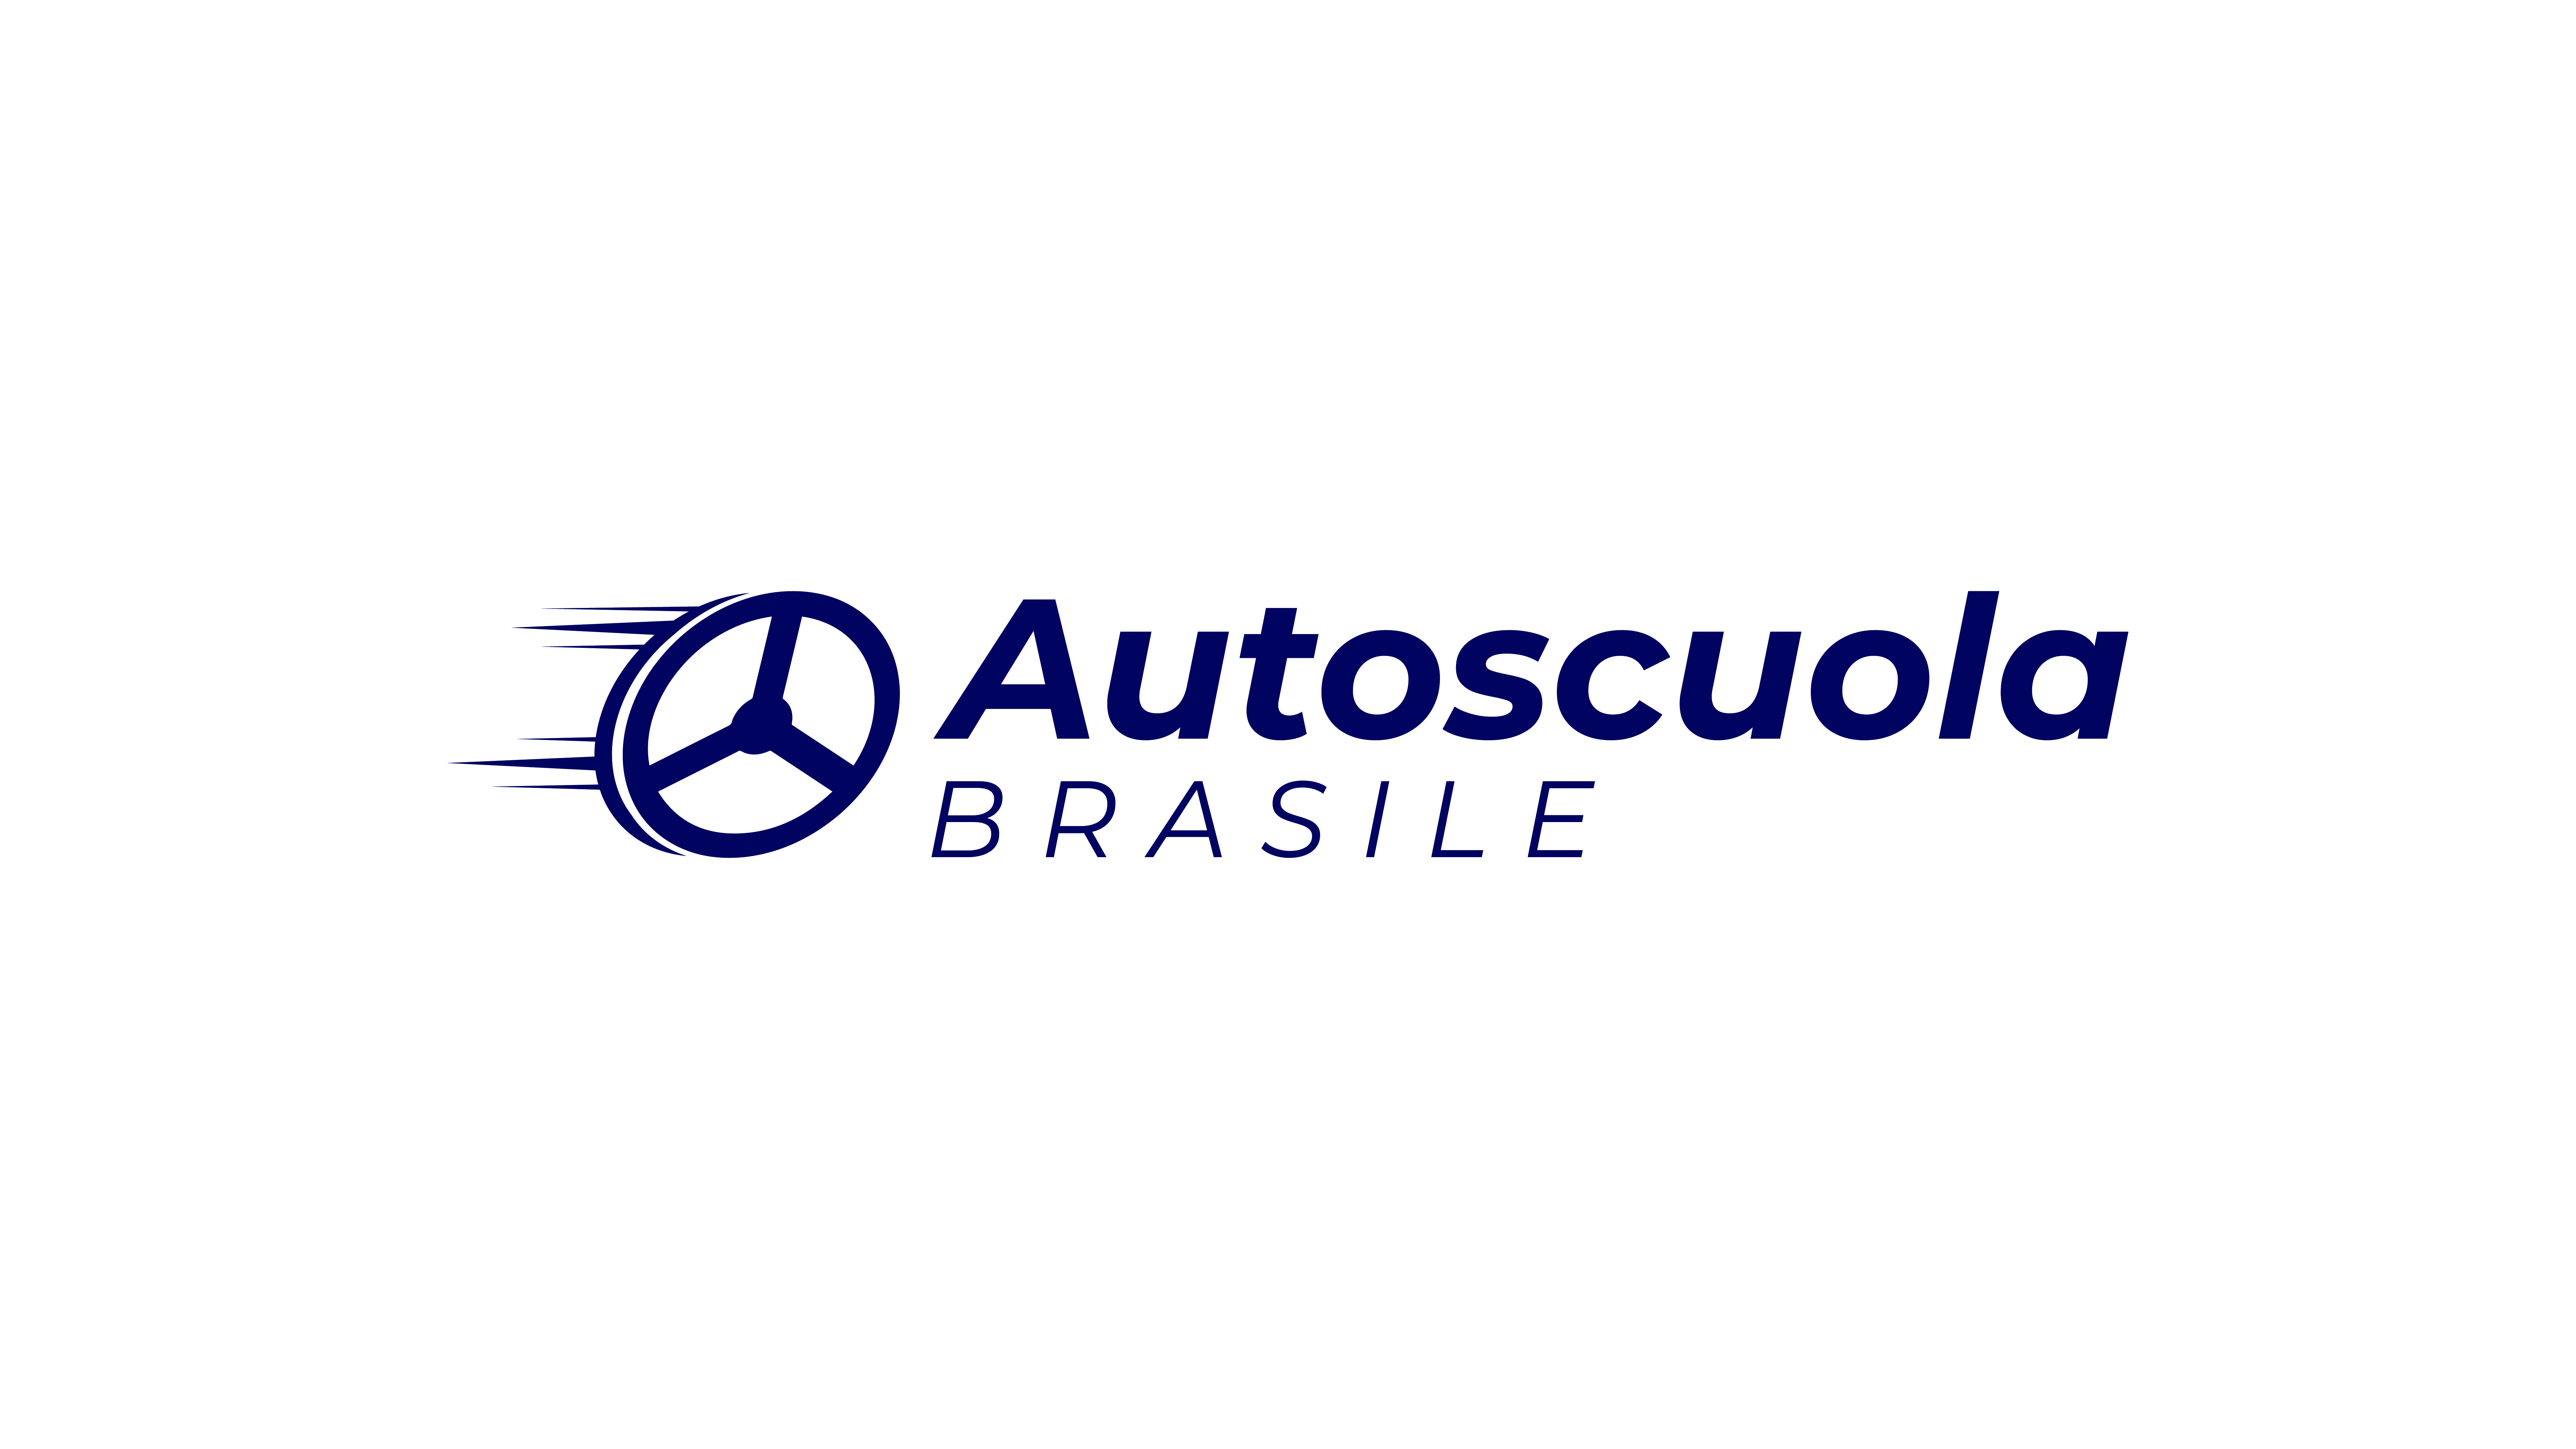 Autoscuola Brasile